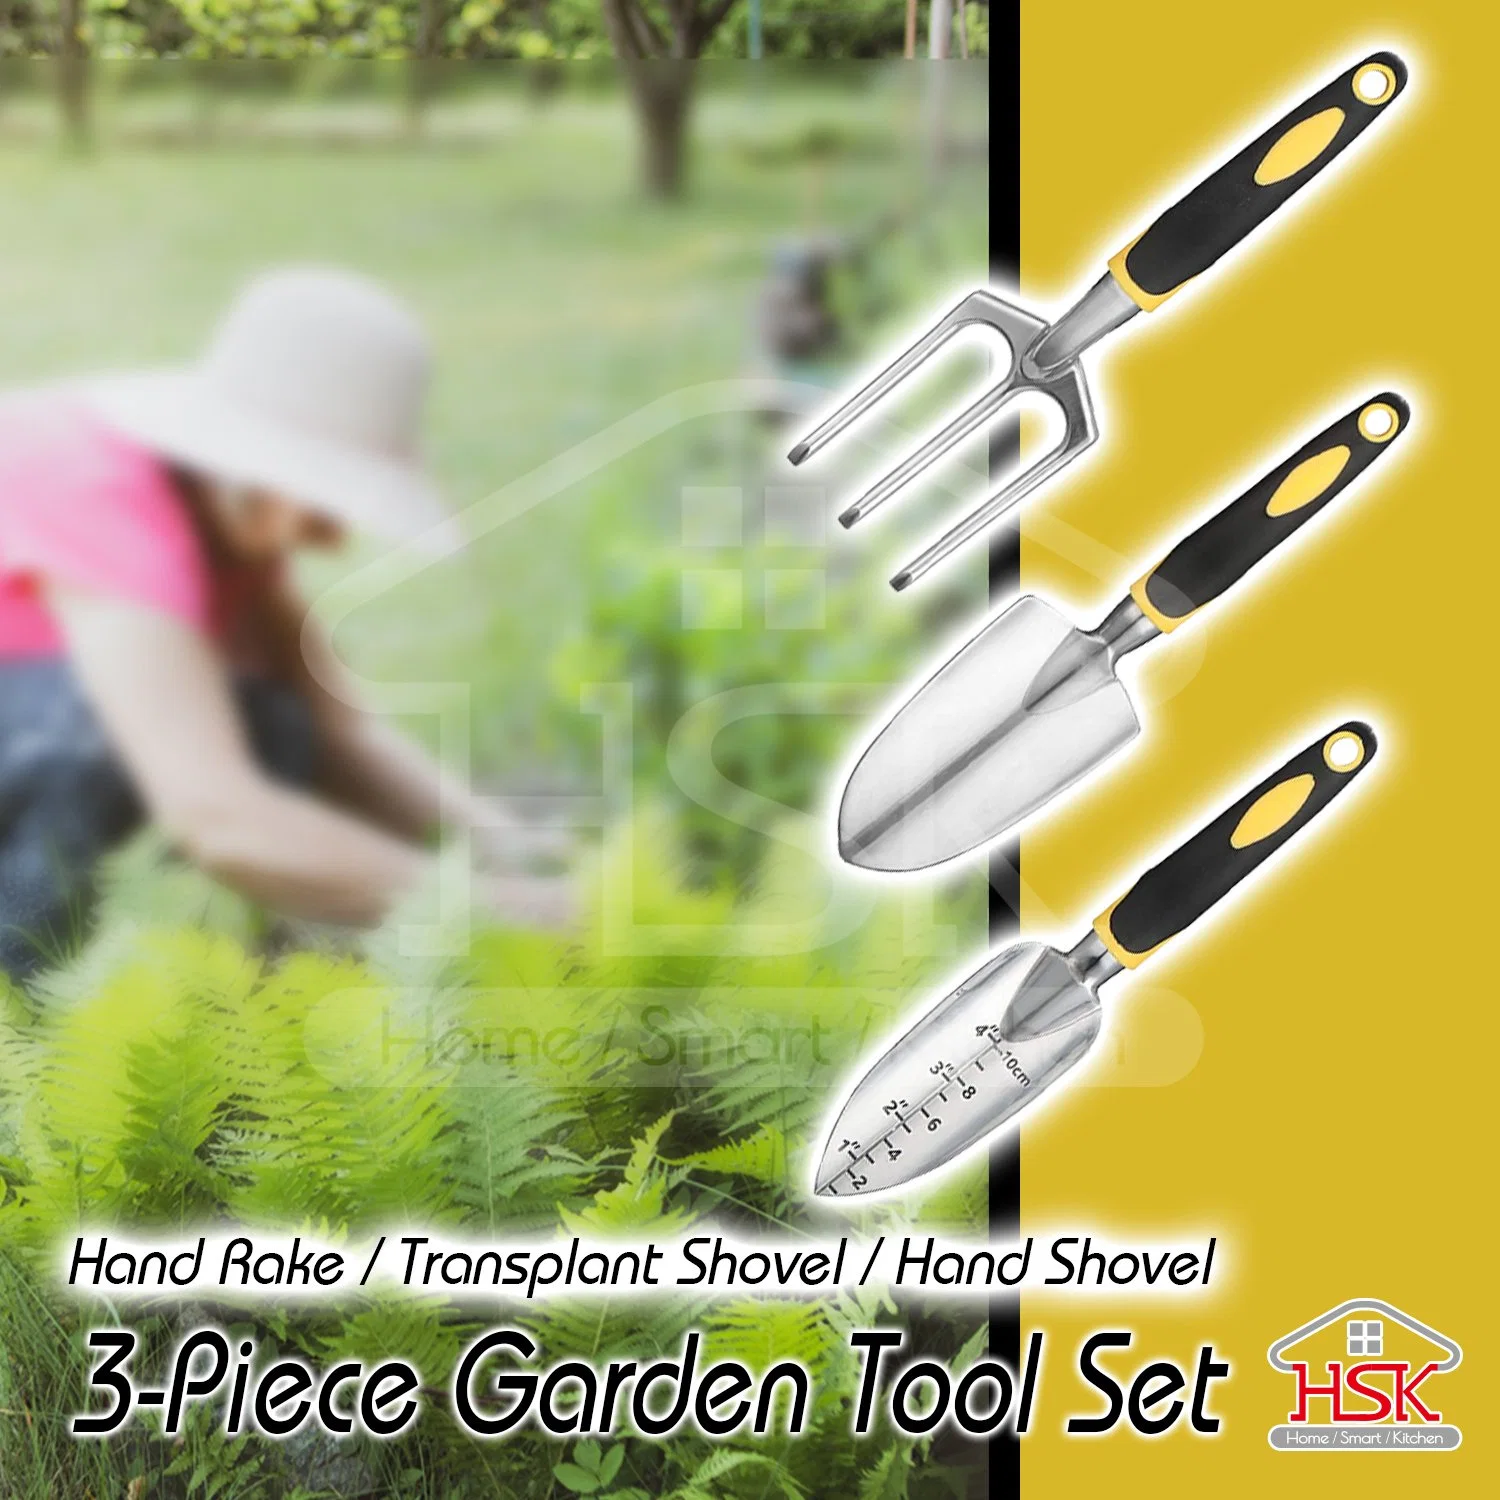 3-Teiliger Garten-Werkzeugsatz Für Hohe Beanspruchung